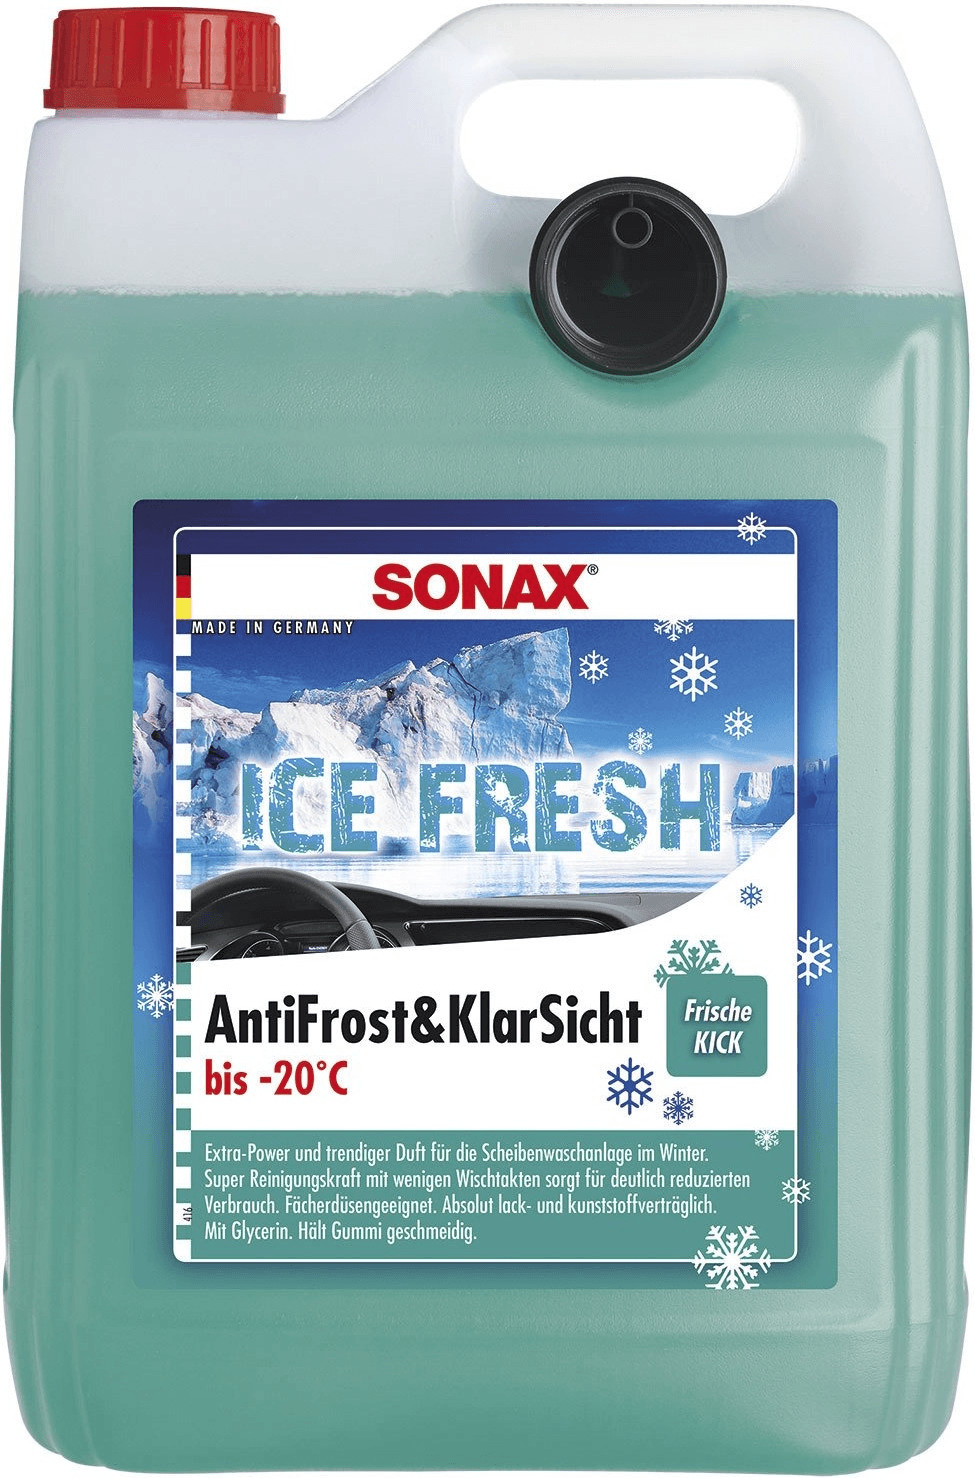 Sonax AntiFrost&KlarSicht Konzentrat IceFresh 1 Liter 01338000